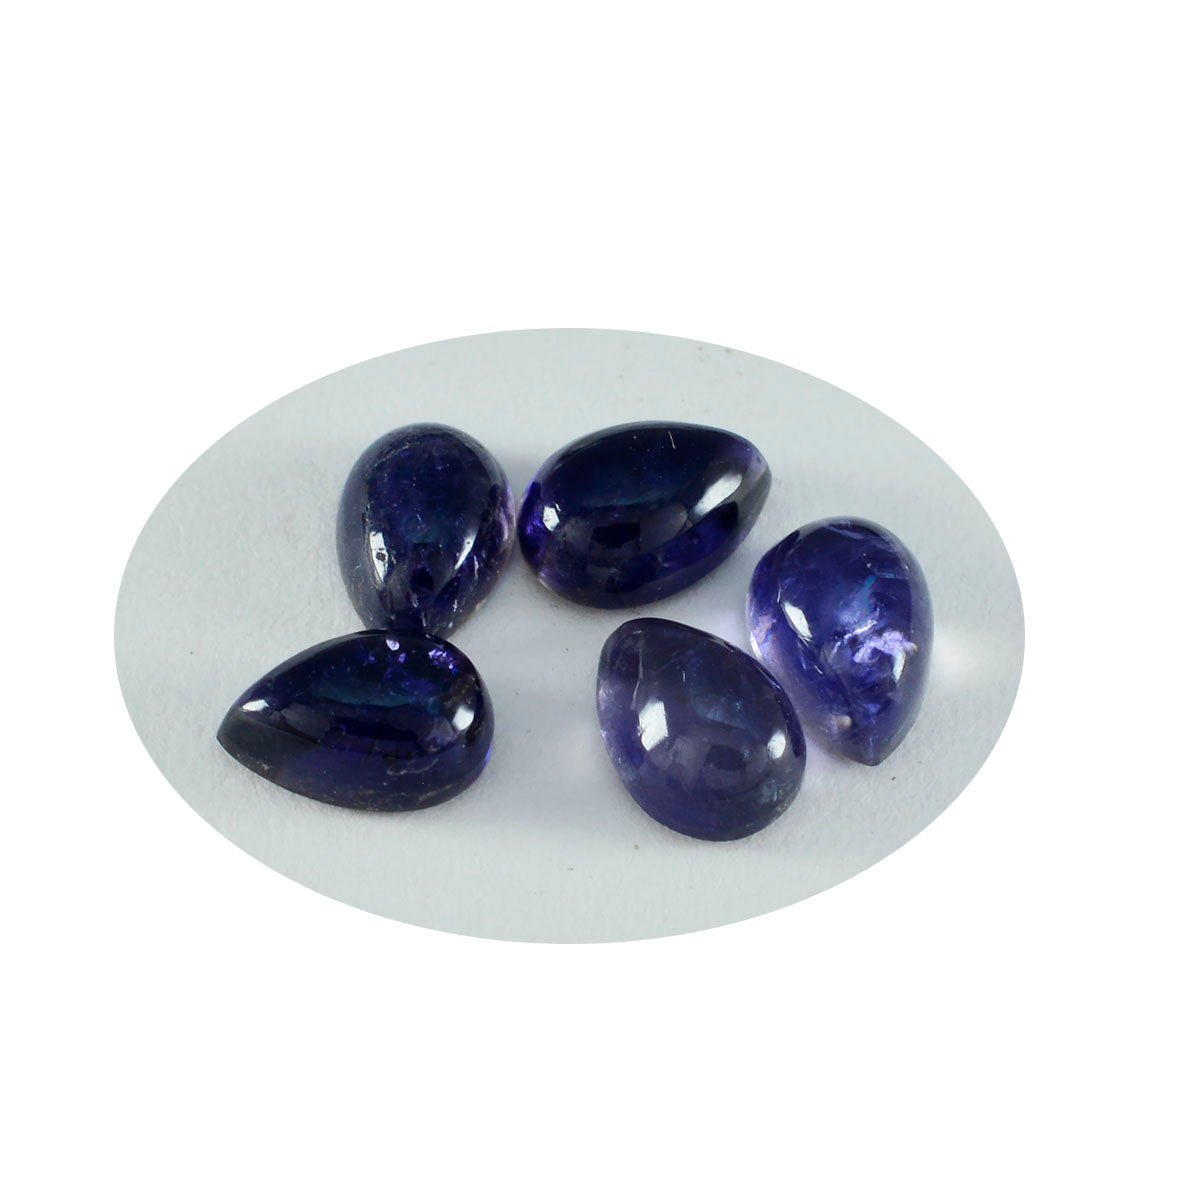 riyogems 1шт синий иолит кабошон 7x10 мм грушевидная форма превосходное качество свободный драгоценный камень